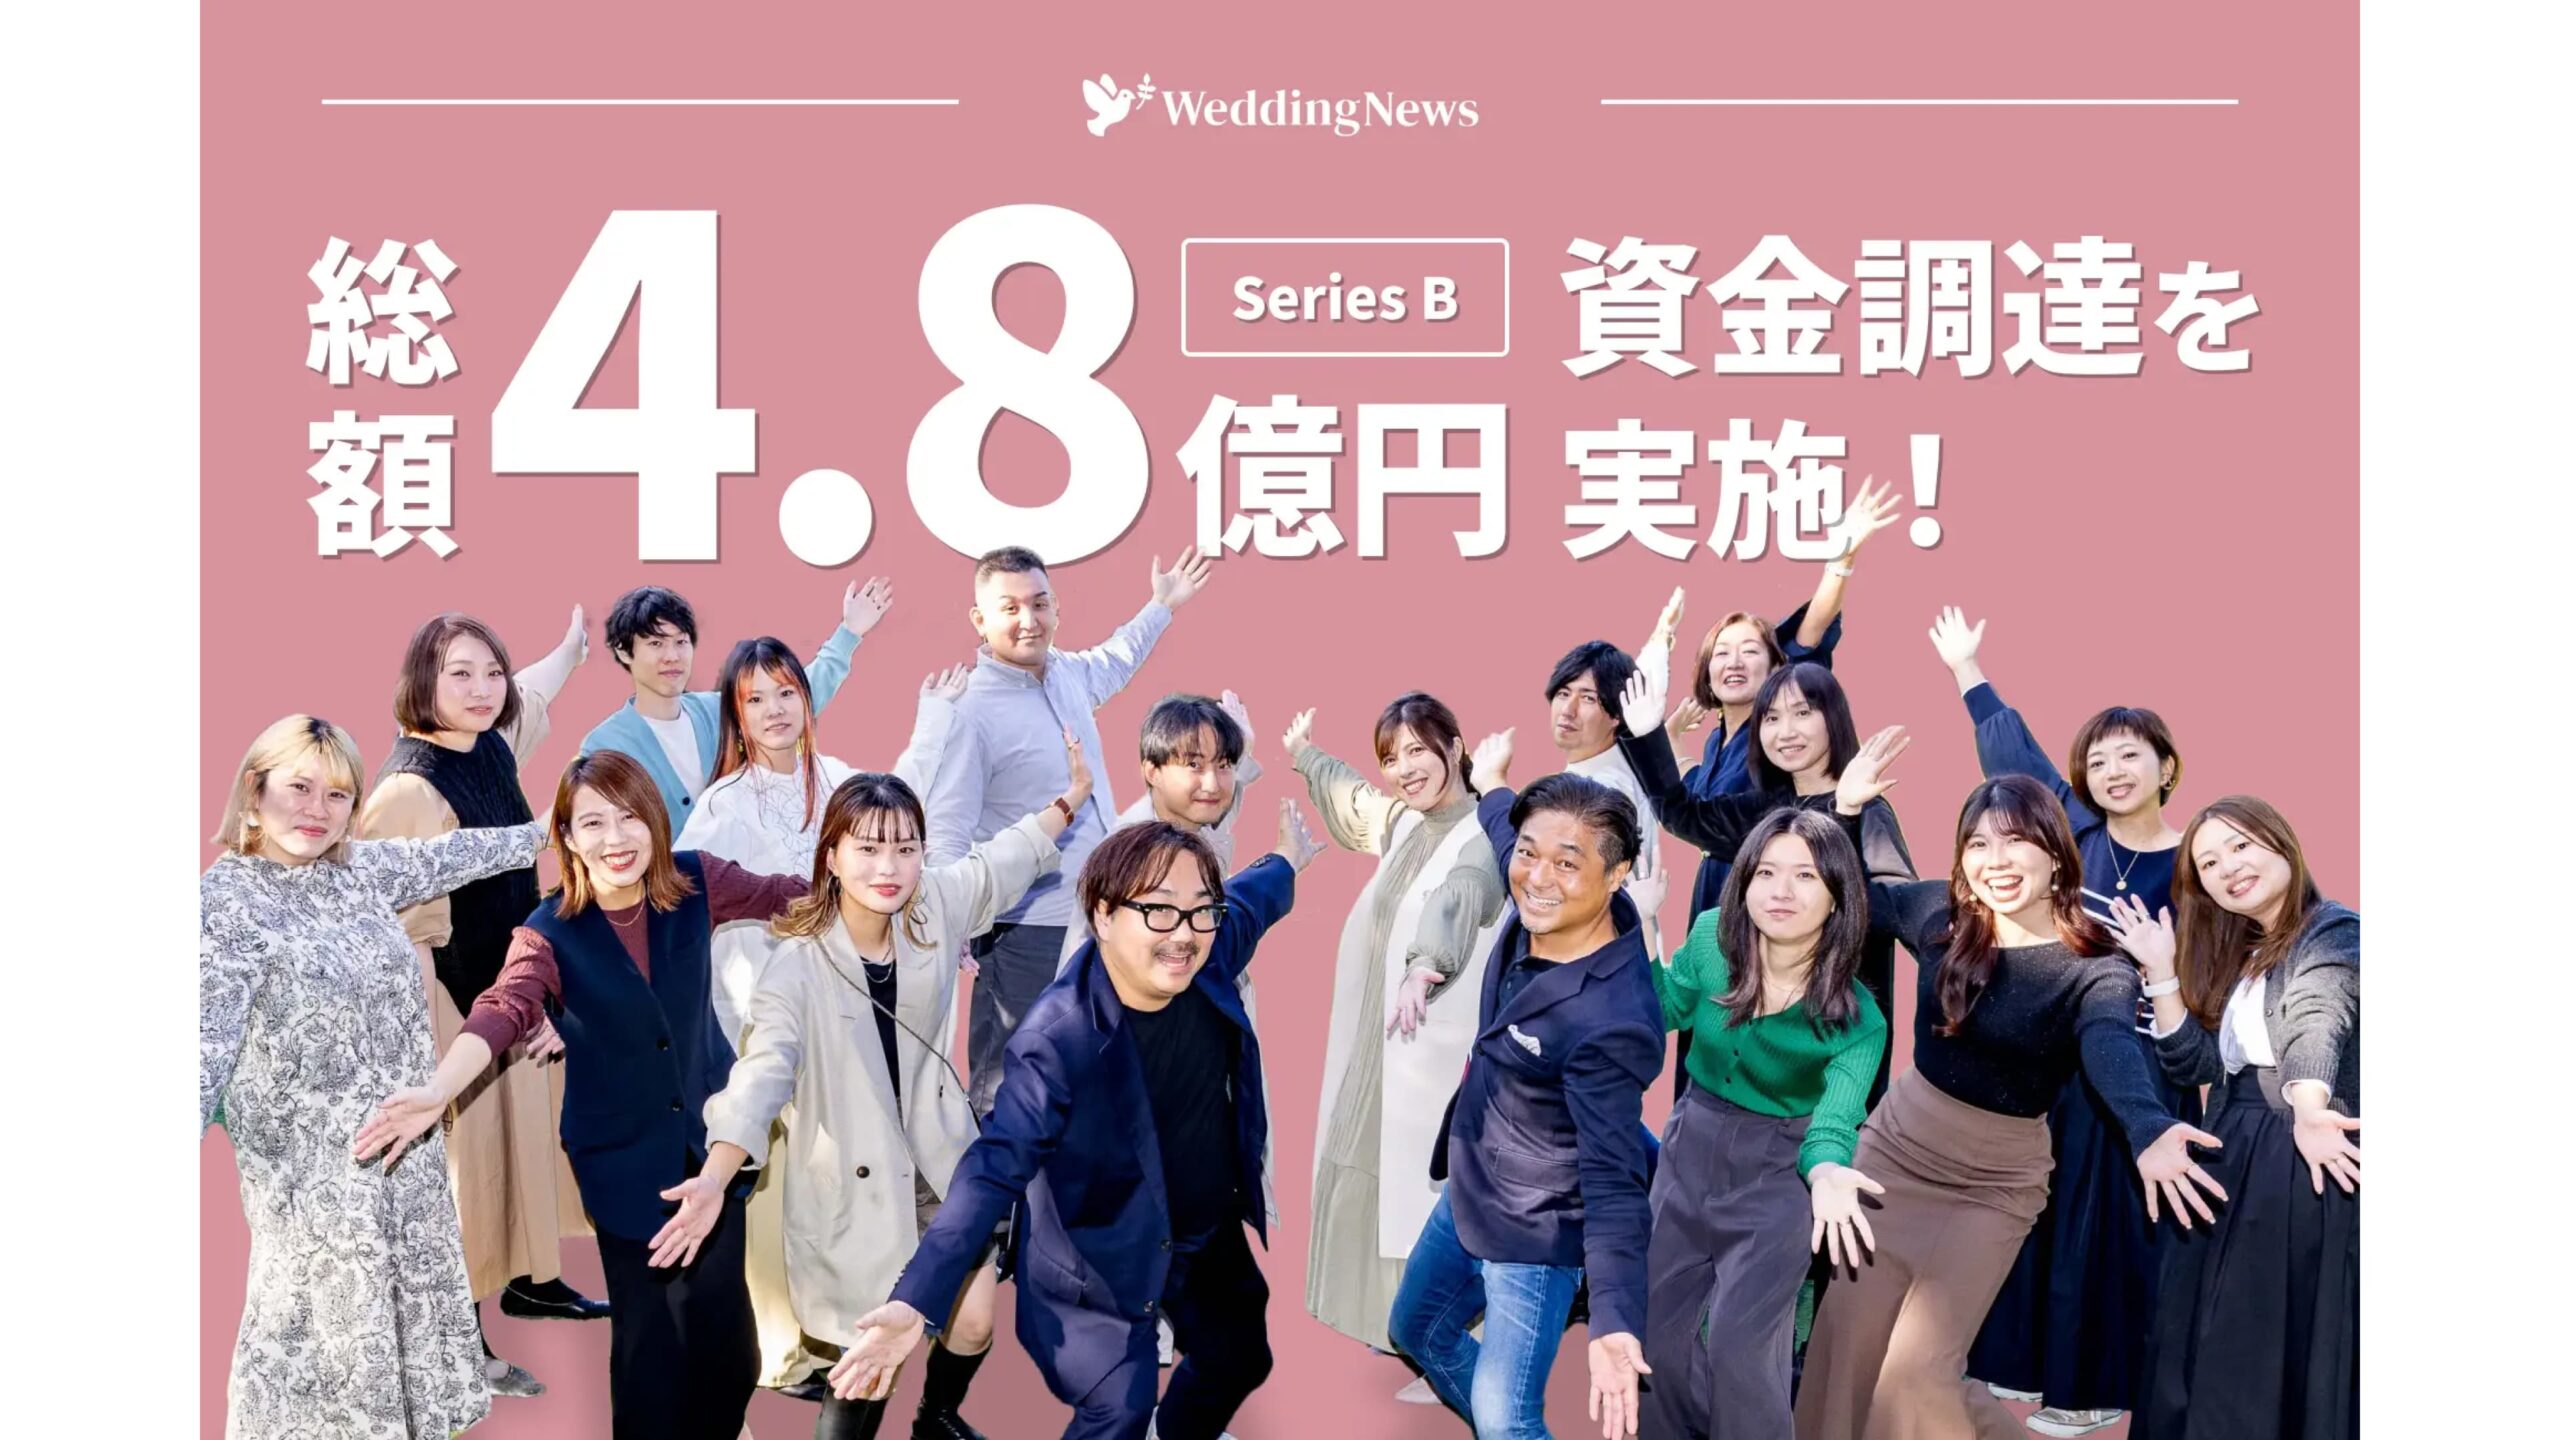 Z世代向け結婚準備アプリ『ウェディングニュース』を運営する株式会社オリジナルライフが4.8億円の資金調達